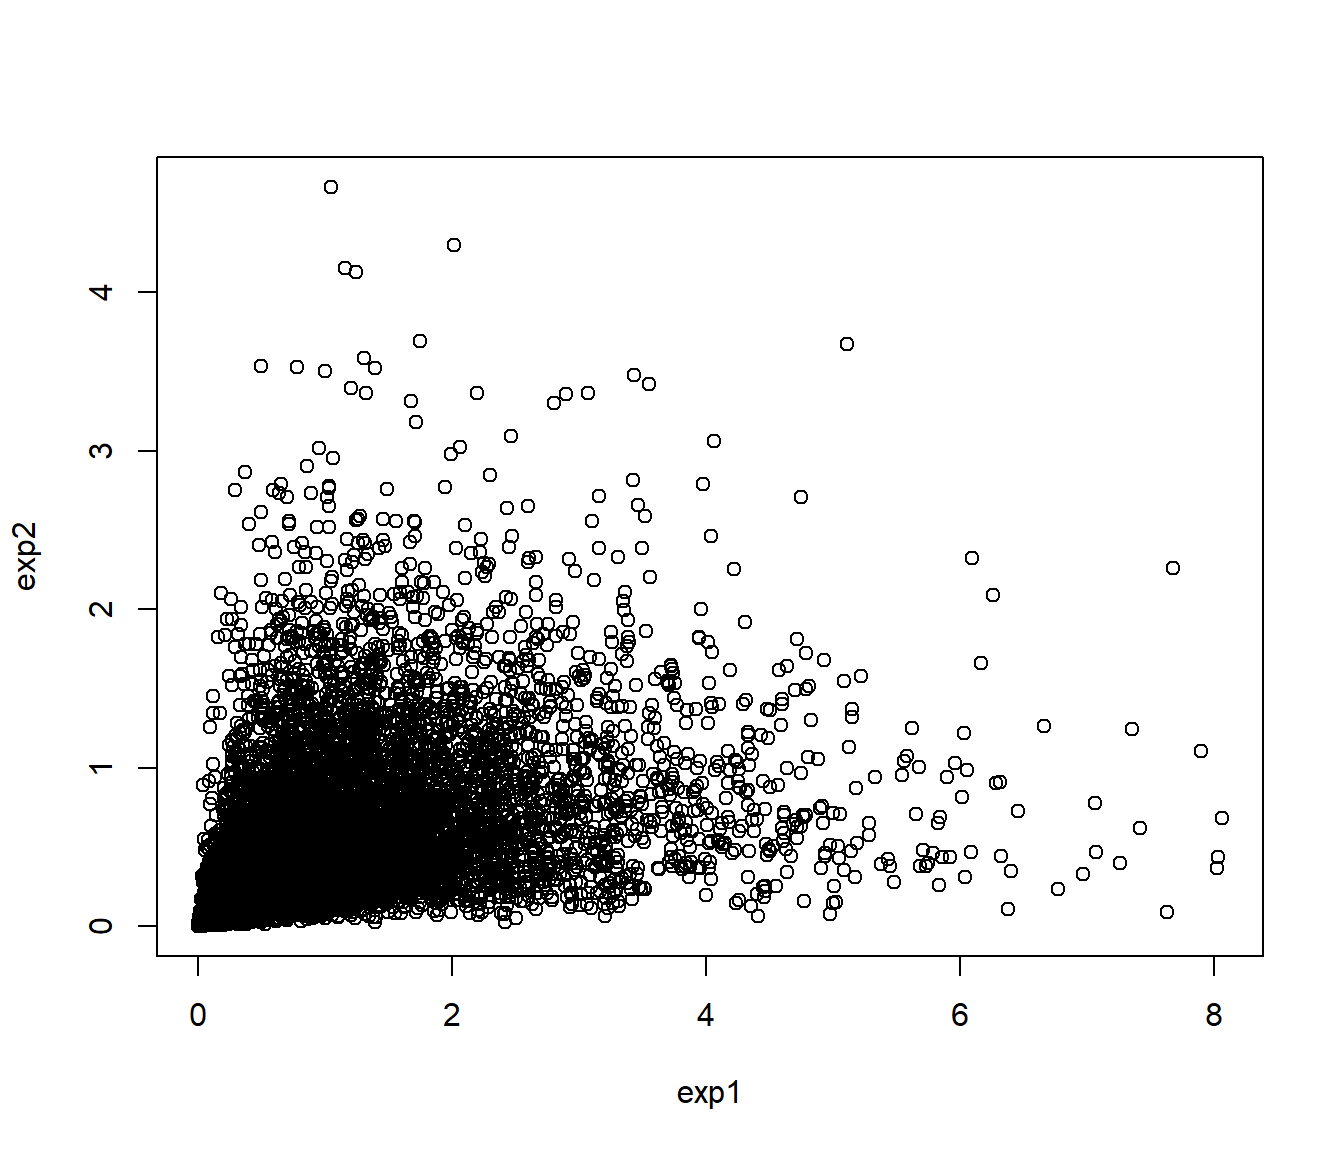 Gráfico de dispersión de los valores generados con distribución exponencial y dependencia definida por la cópula de Clayton.